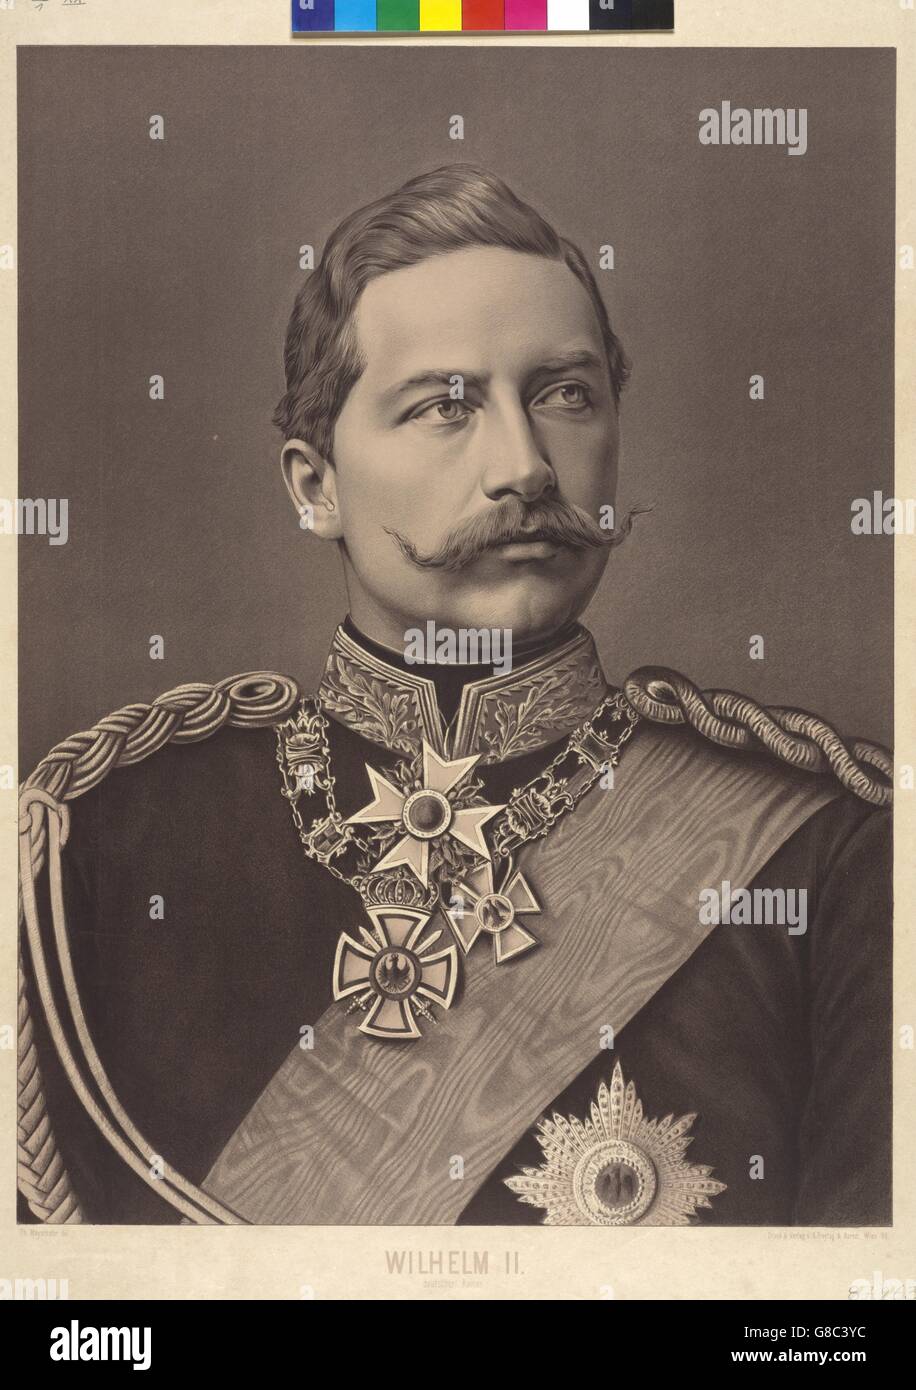 Wilhelm II. deutscher Kaiser Stock Photo